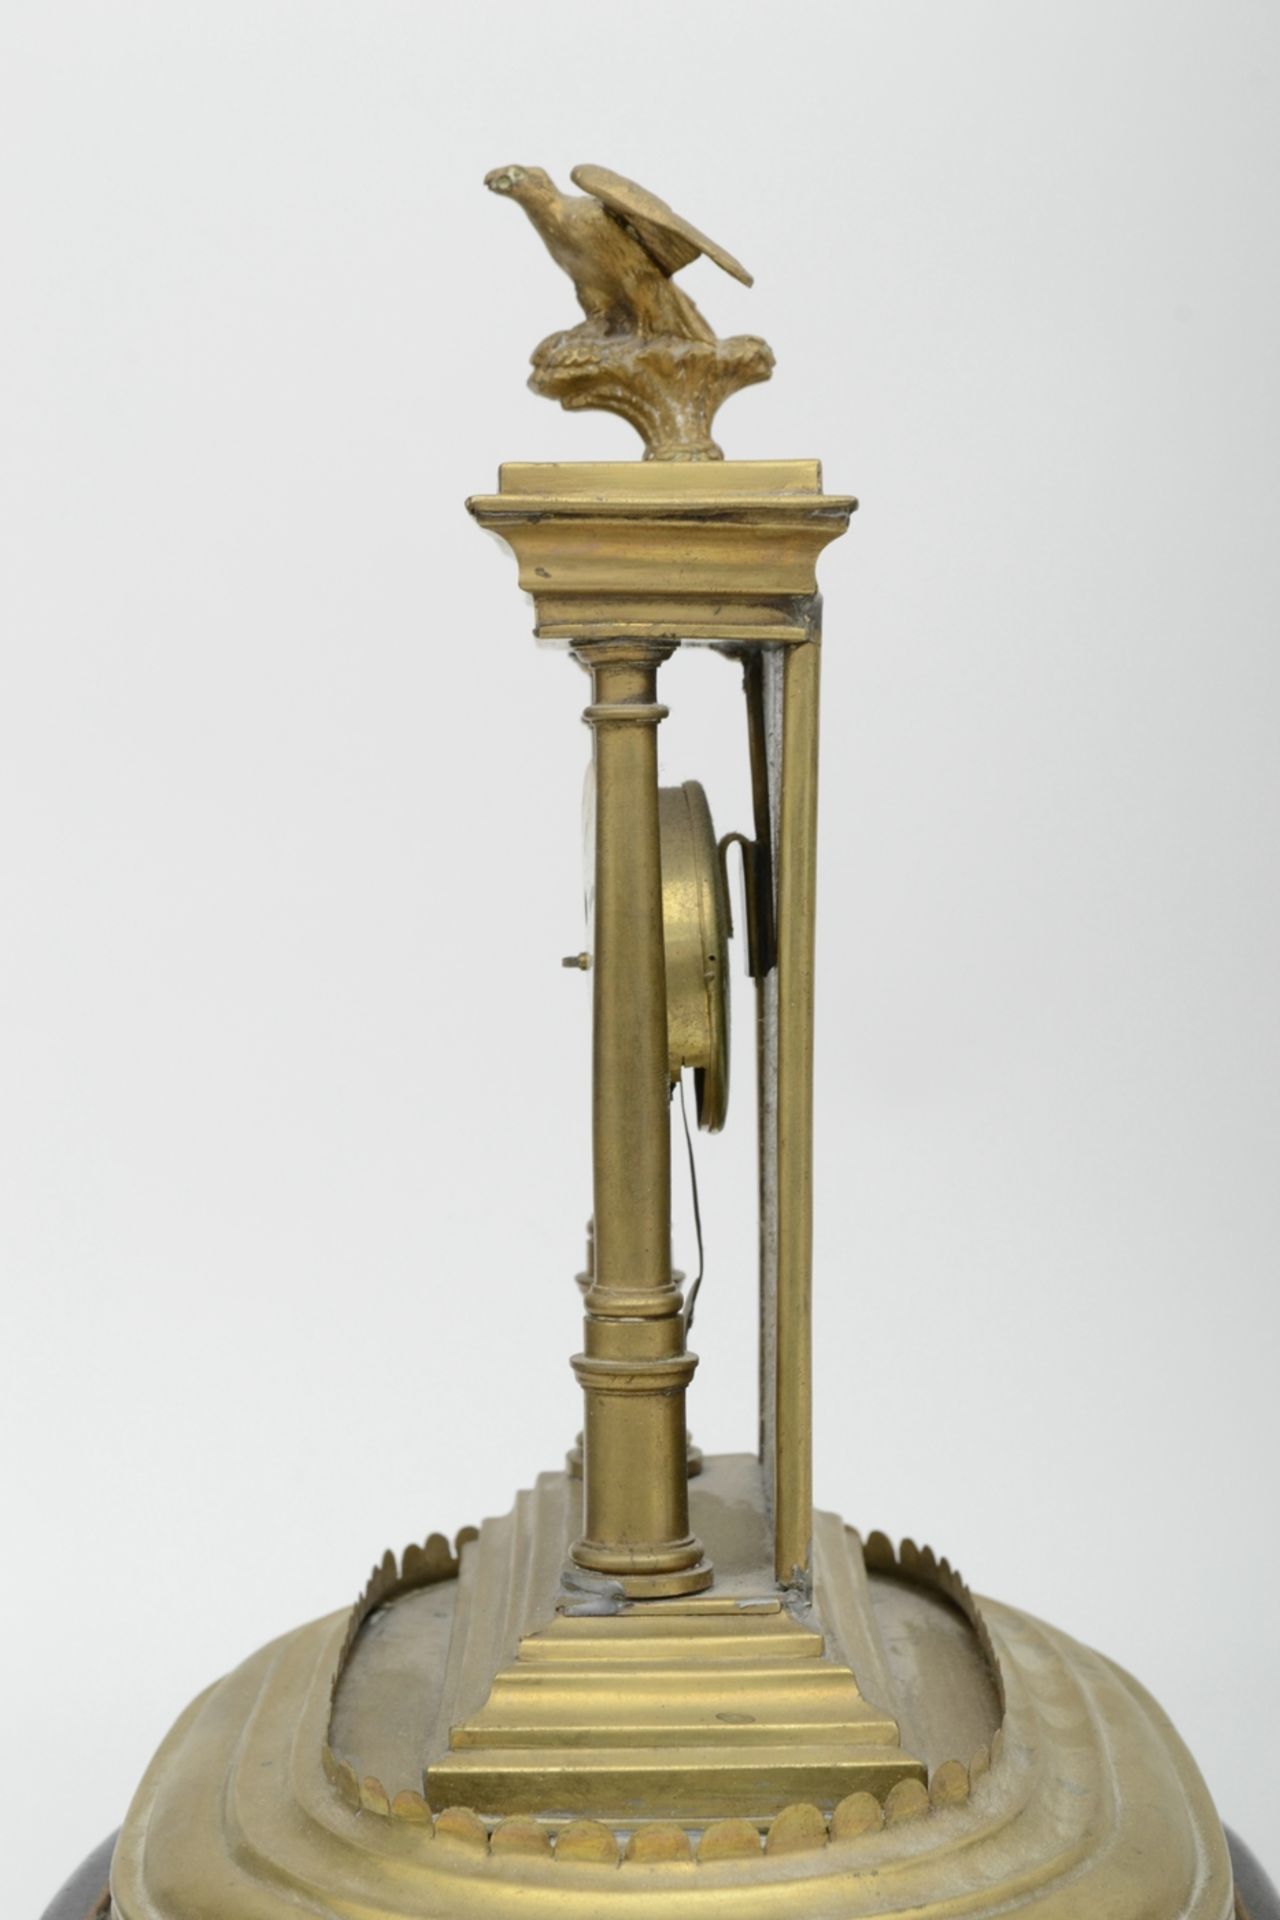 Dekorative Tischuhr in Portalform, von Adler gekrönt; ungeprüftes, mechanisches Uhrwerk, unterhalb - Image 7 of 7